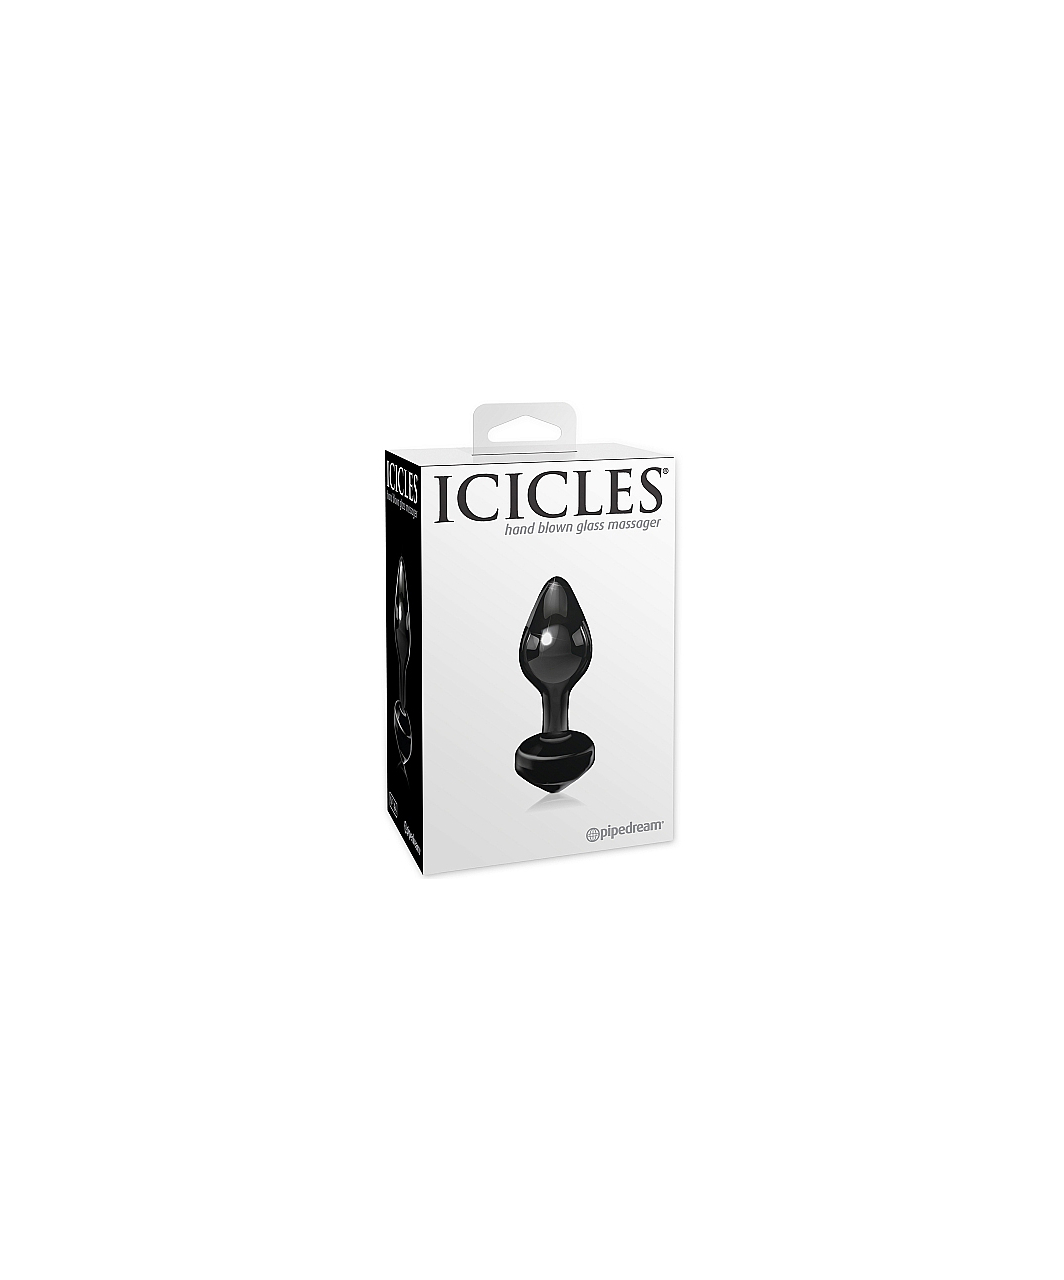 Icicles No. 44